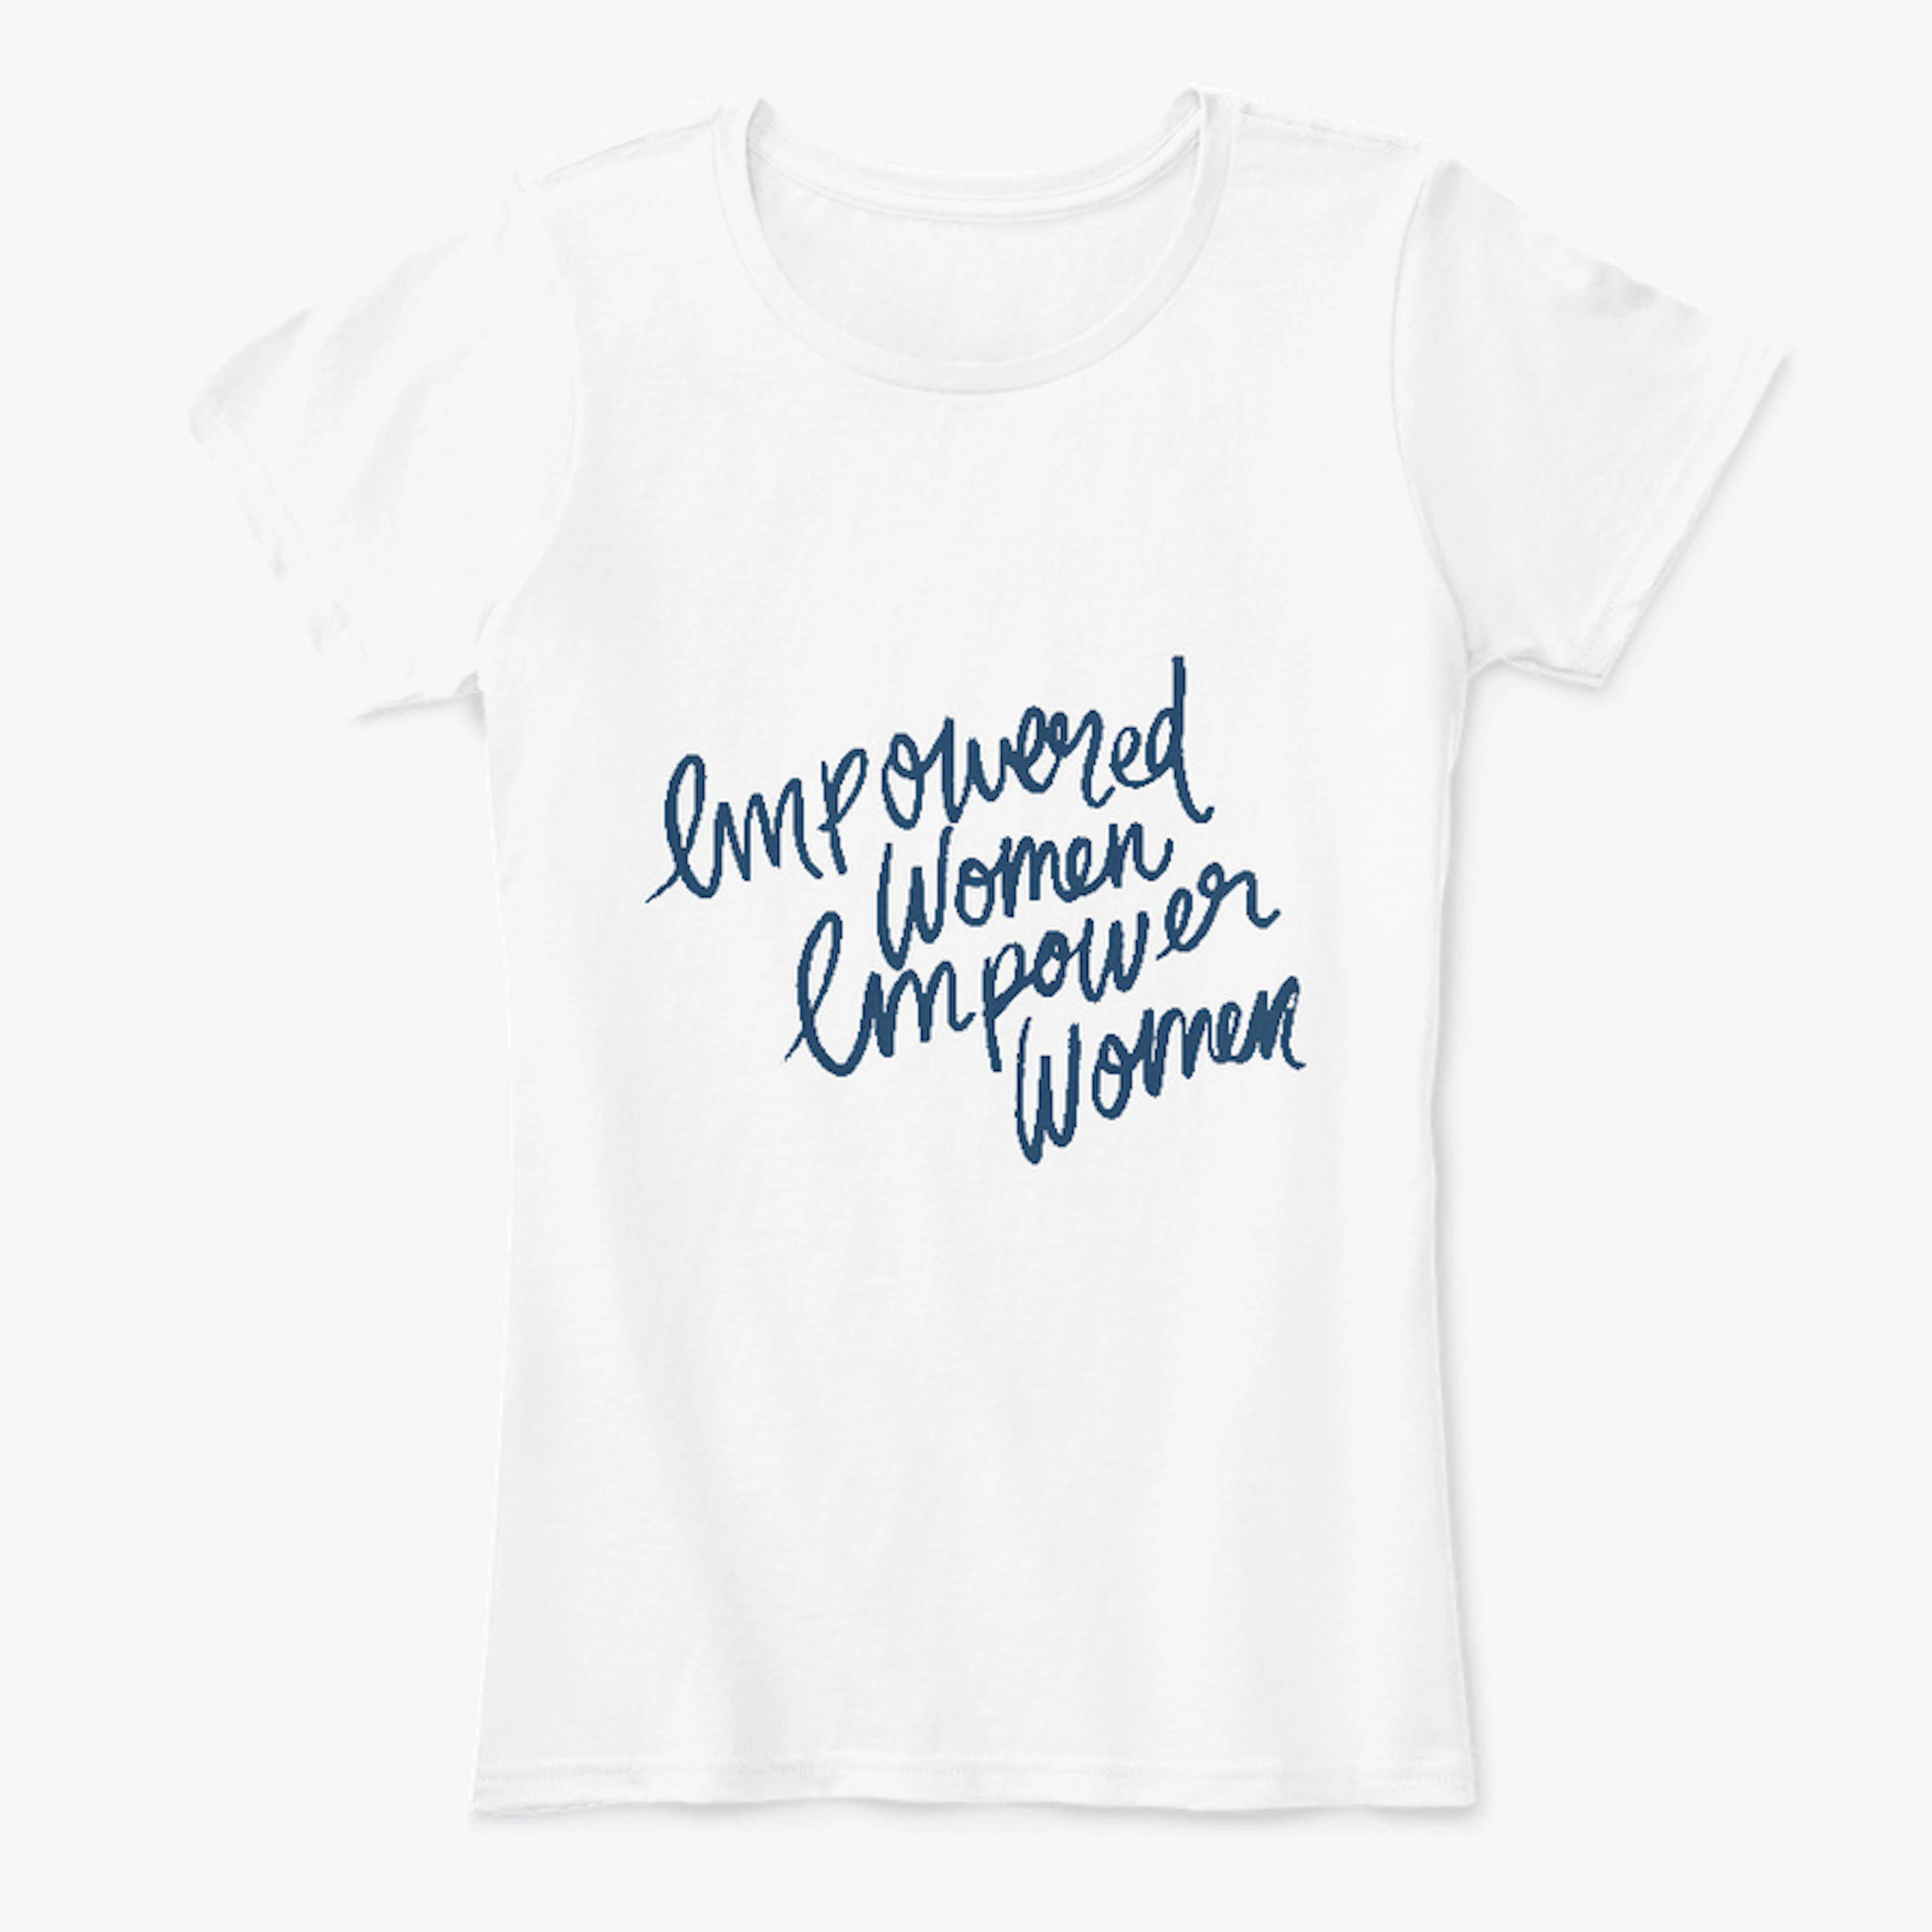 Empowered Women Empower Women white tee